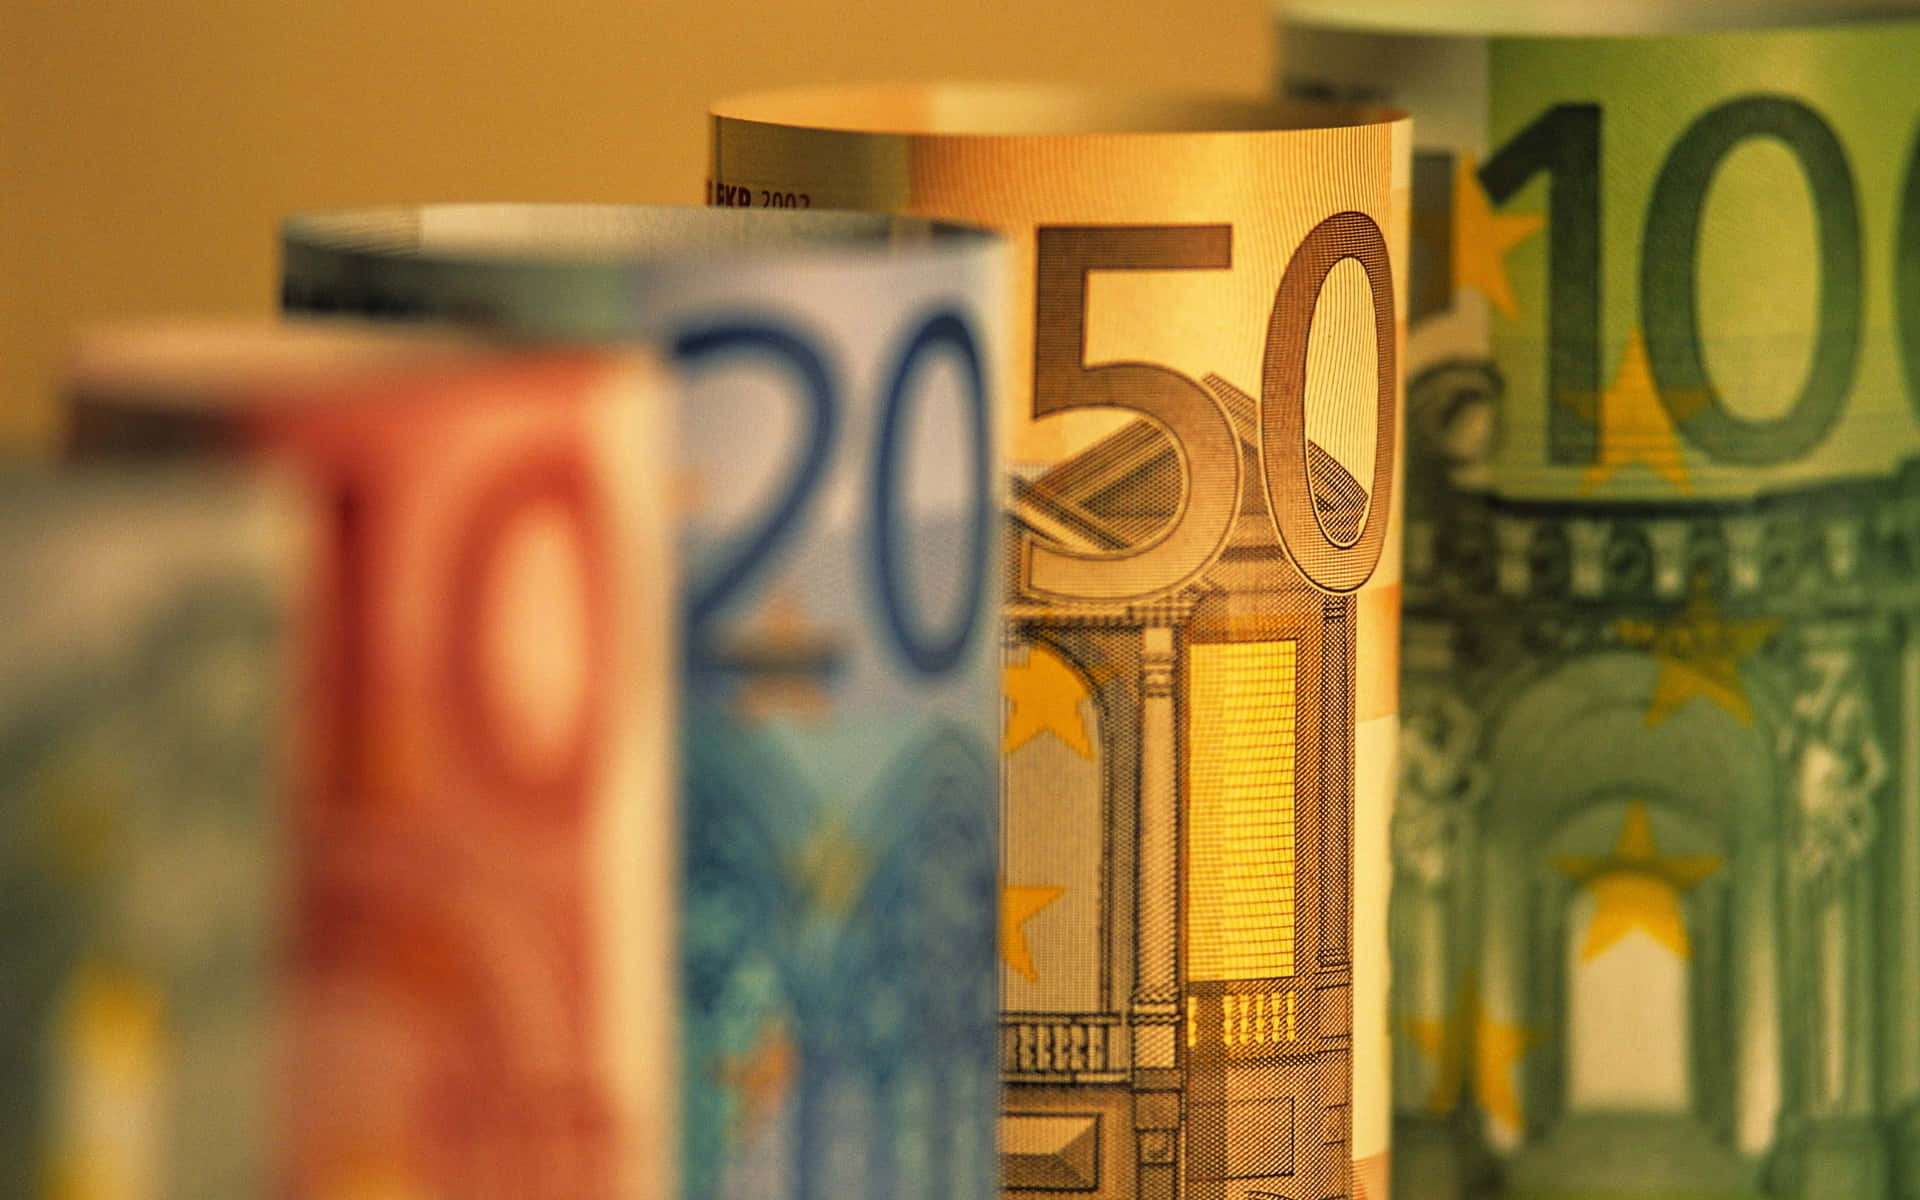 Notasde Euro Em Uma Fileira